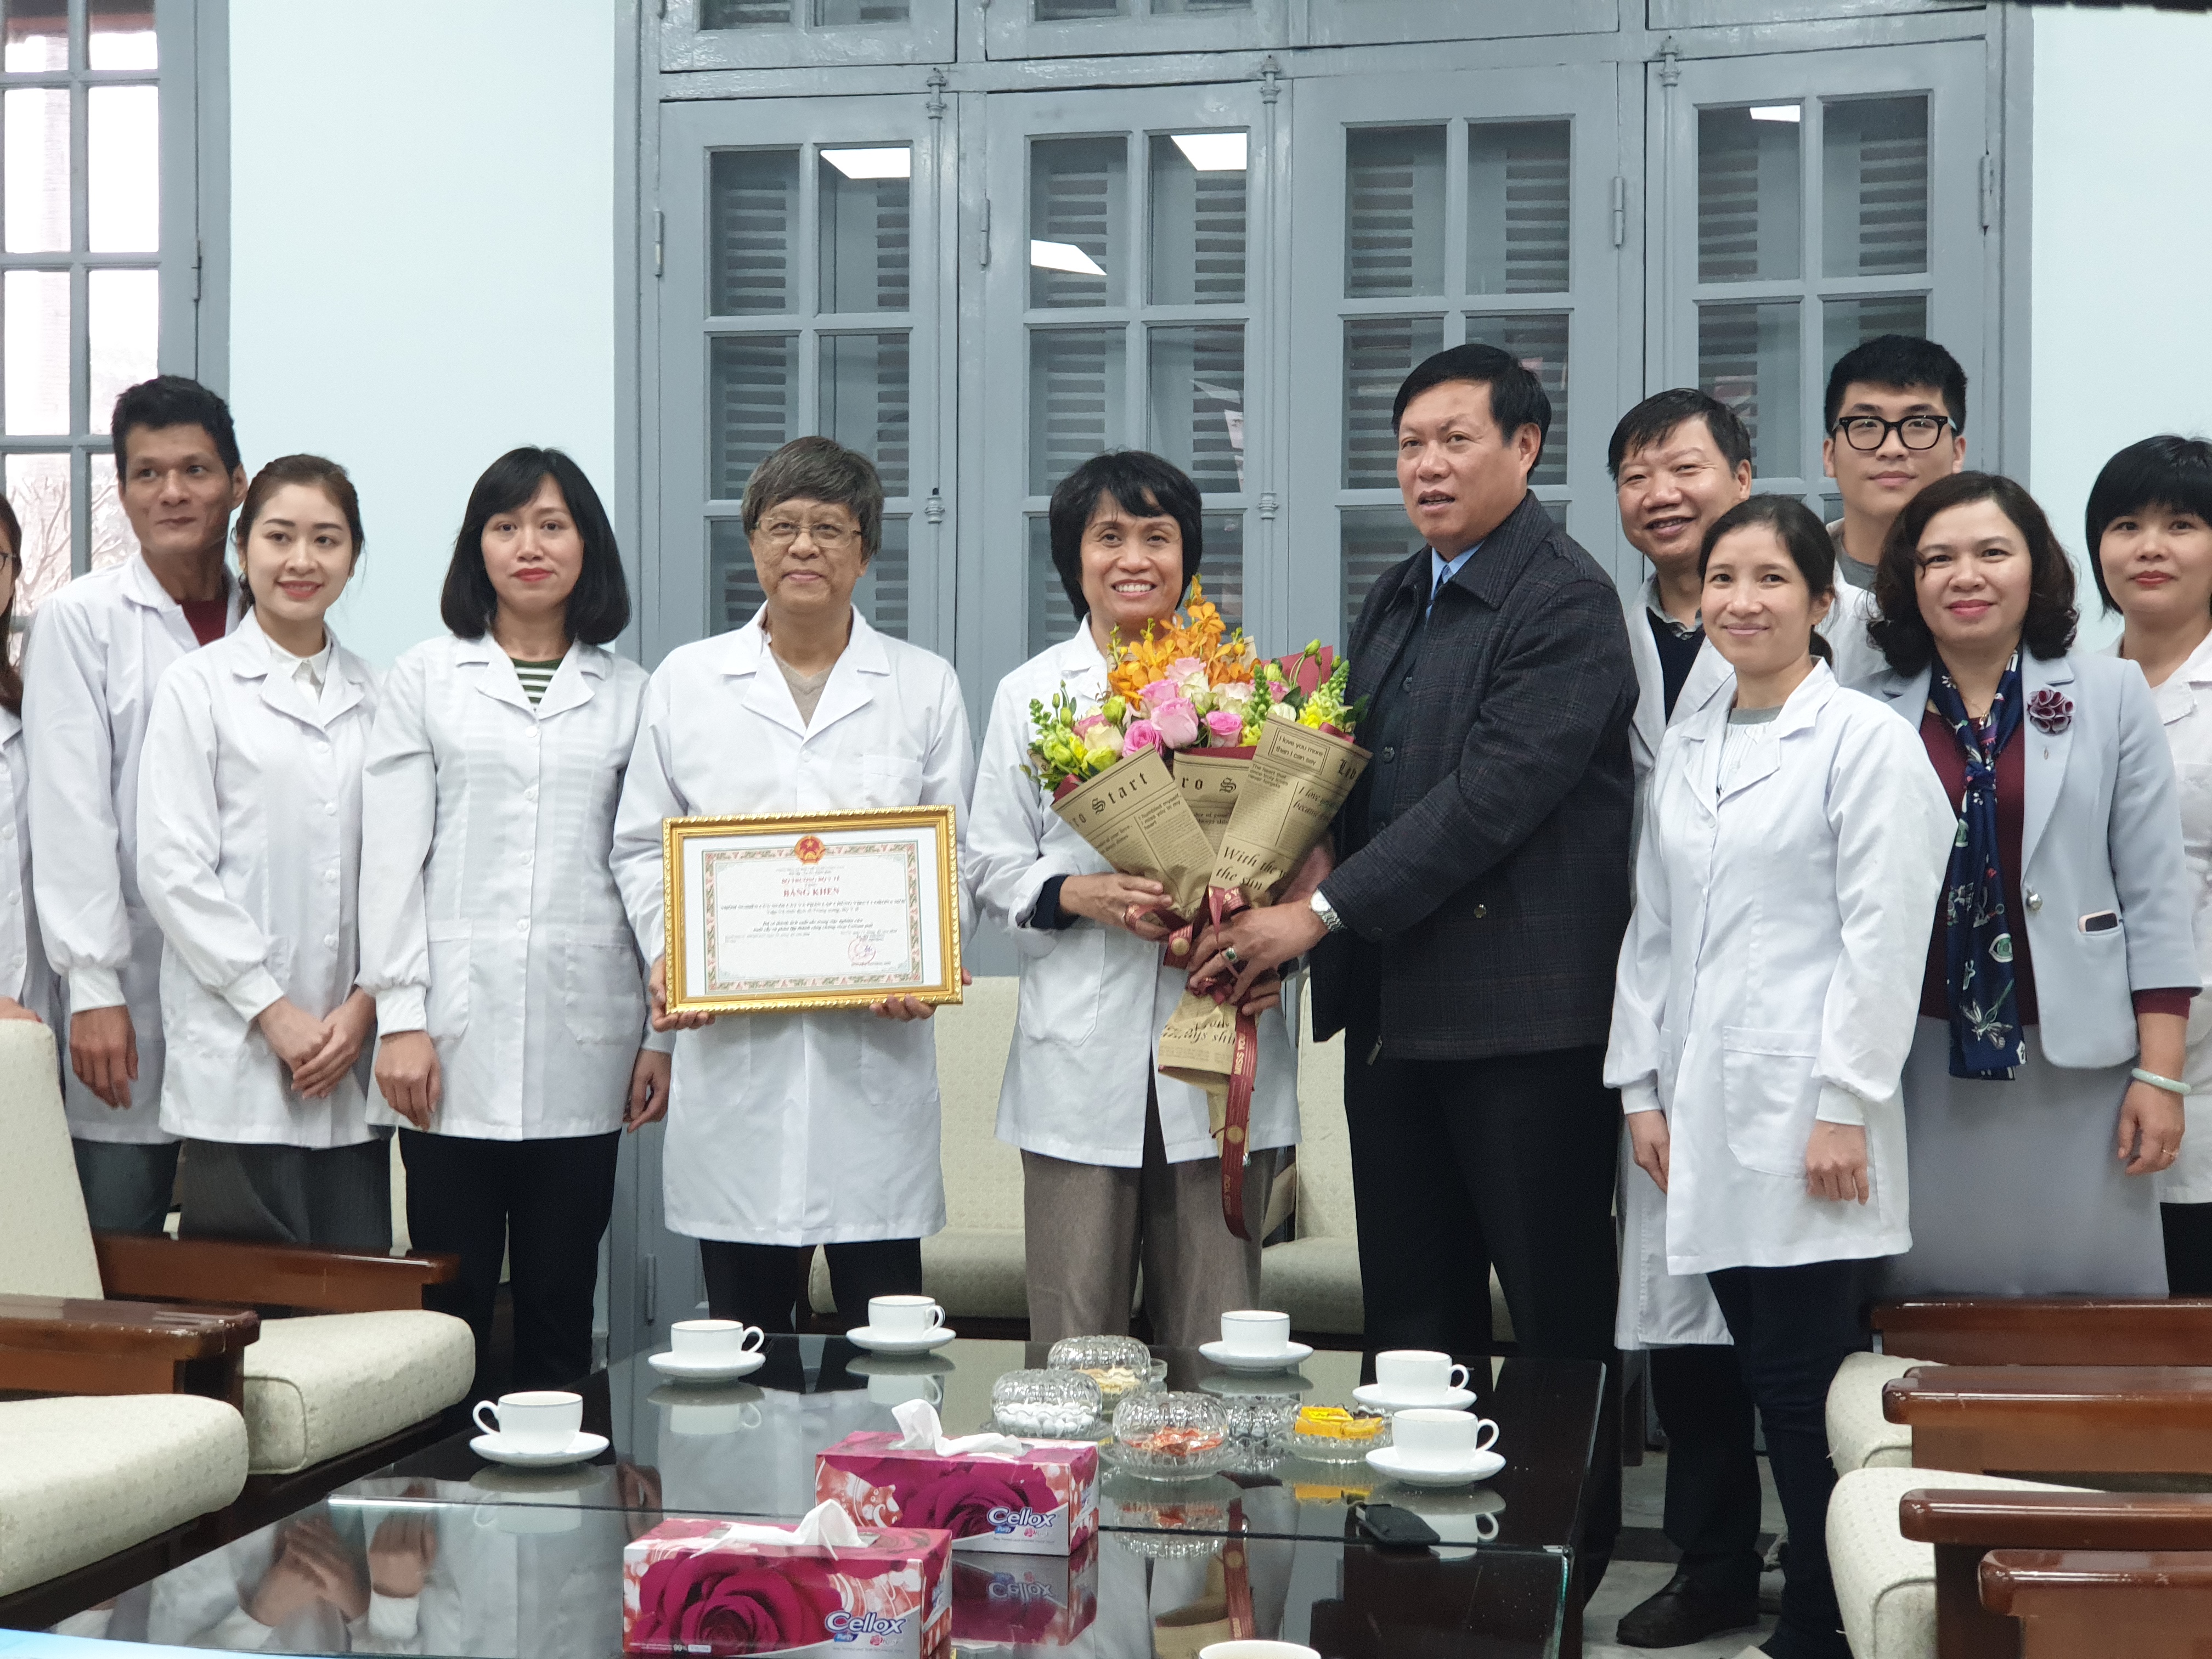 1 tập thể và 6 cá nhân đã được tặng bằng khen của Bộ trưởng Bộ Y tế vì có thành tích xuất sắc trong việc nghiên cứu thành công, nuôi cấy và phân lập chủng mới Virus Corona